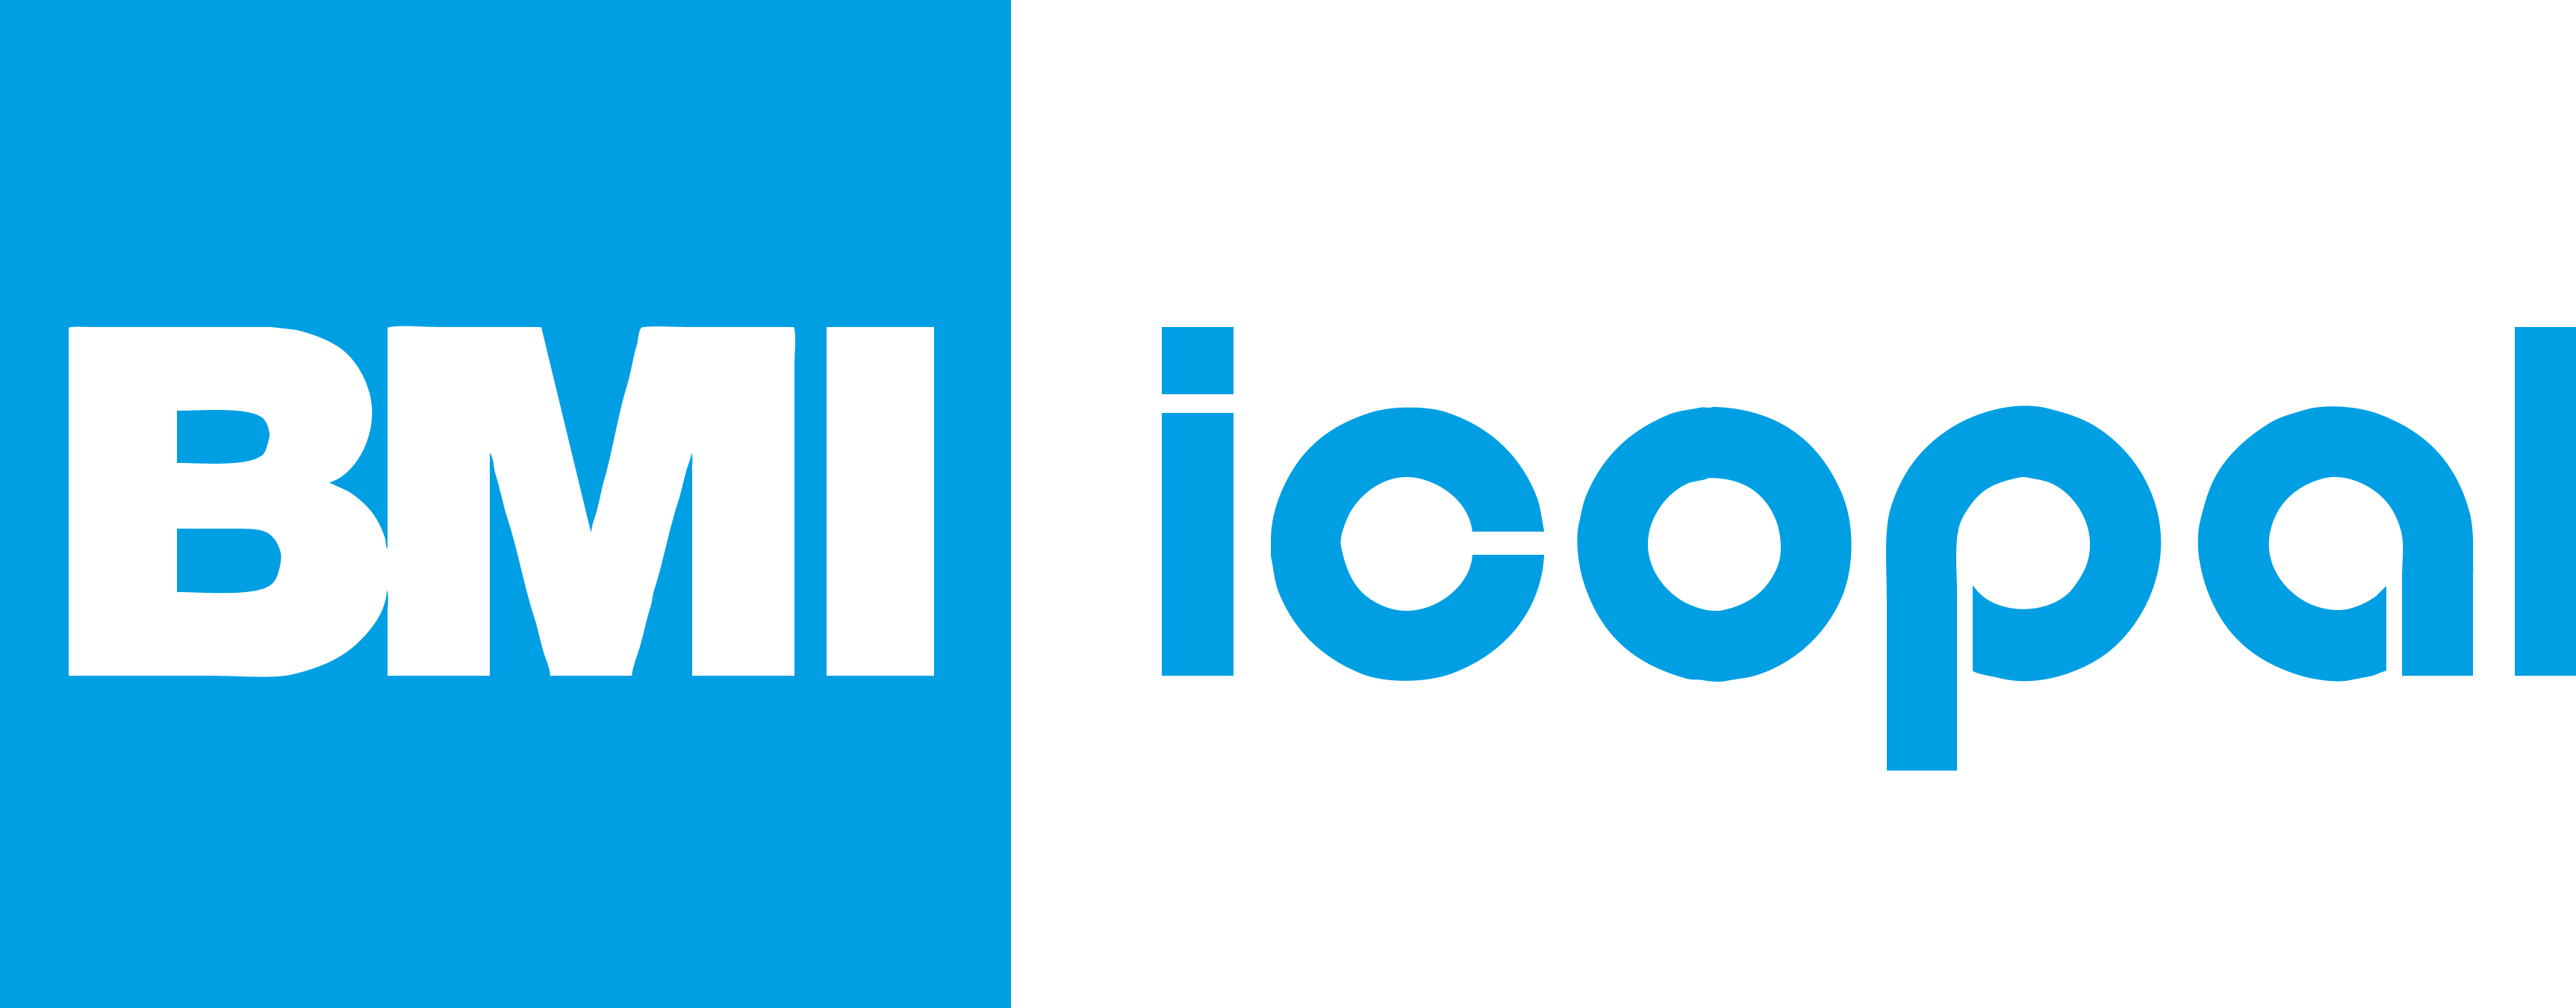 Logo de l’entreprise ICOPAL